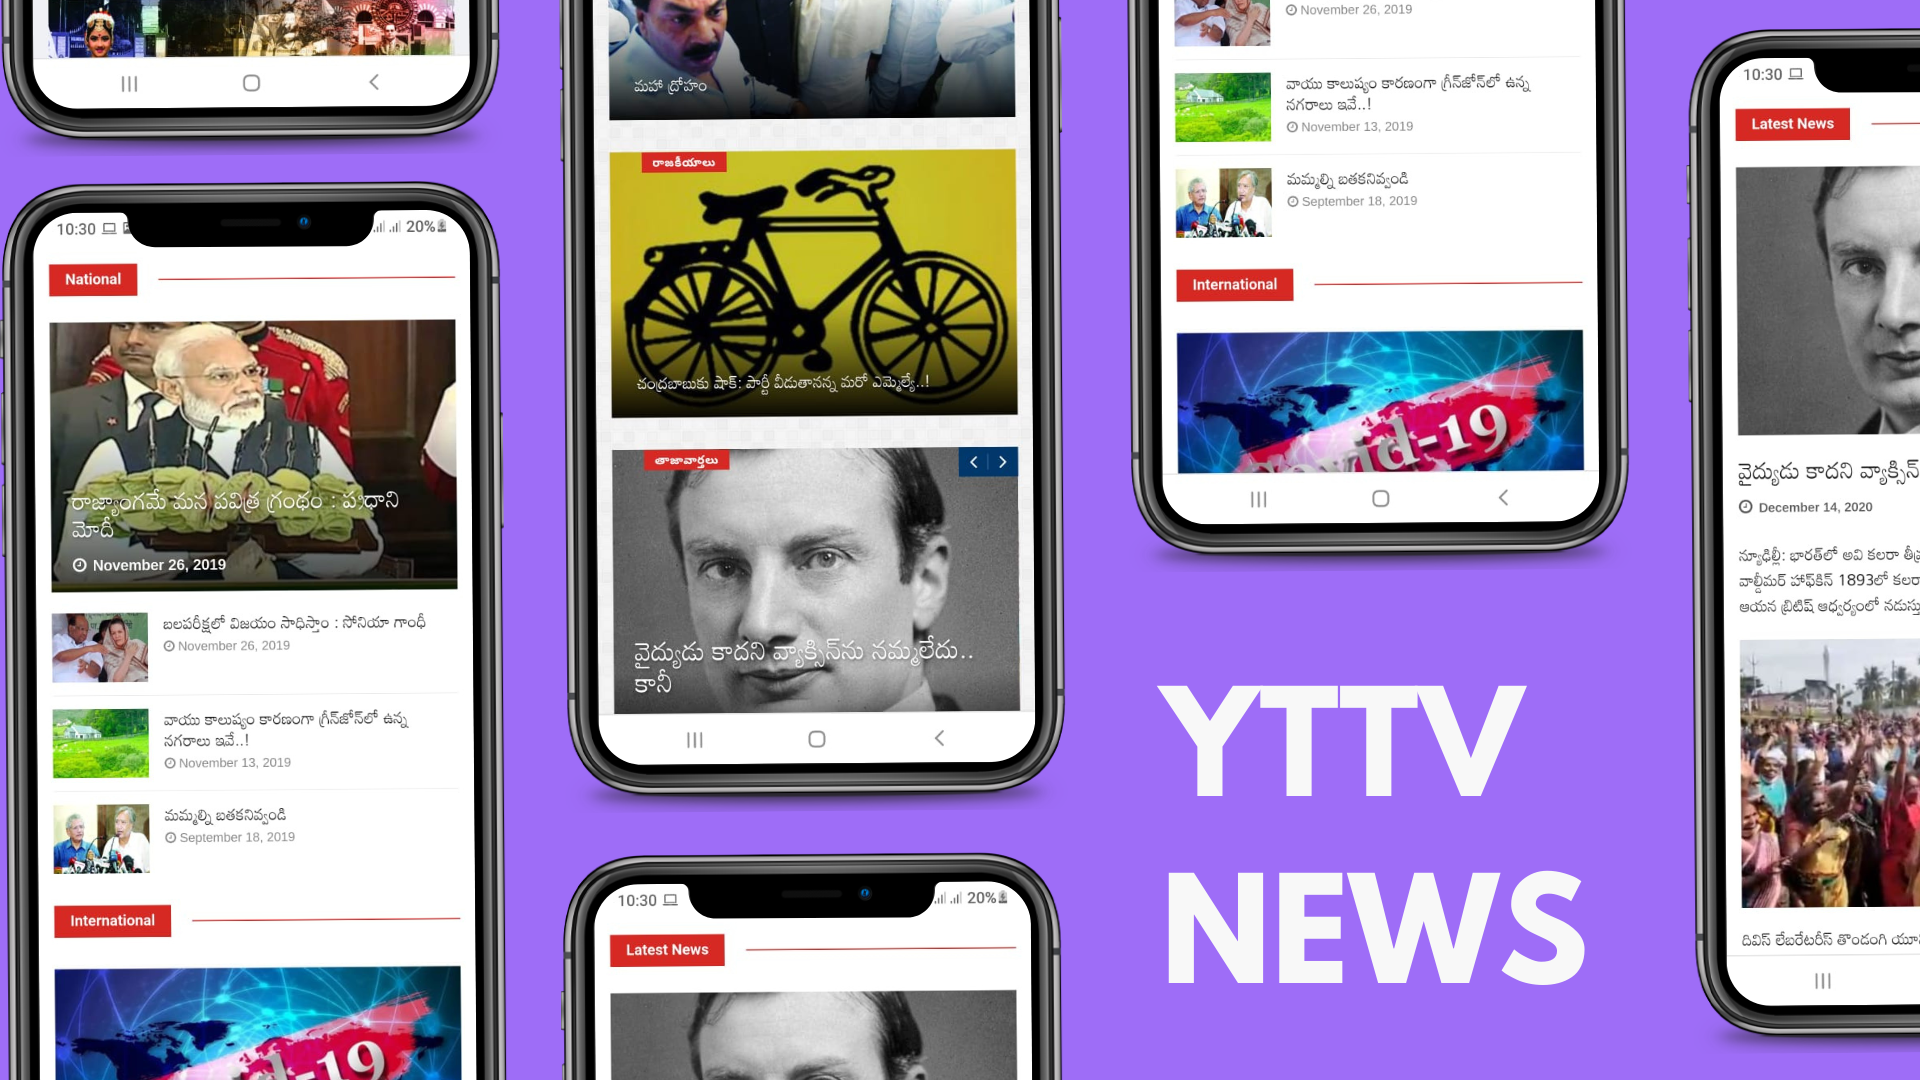 YTTV News